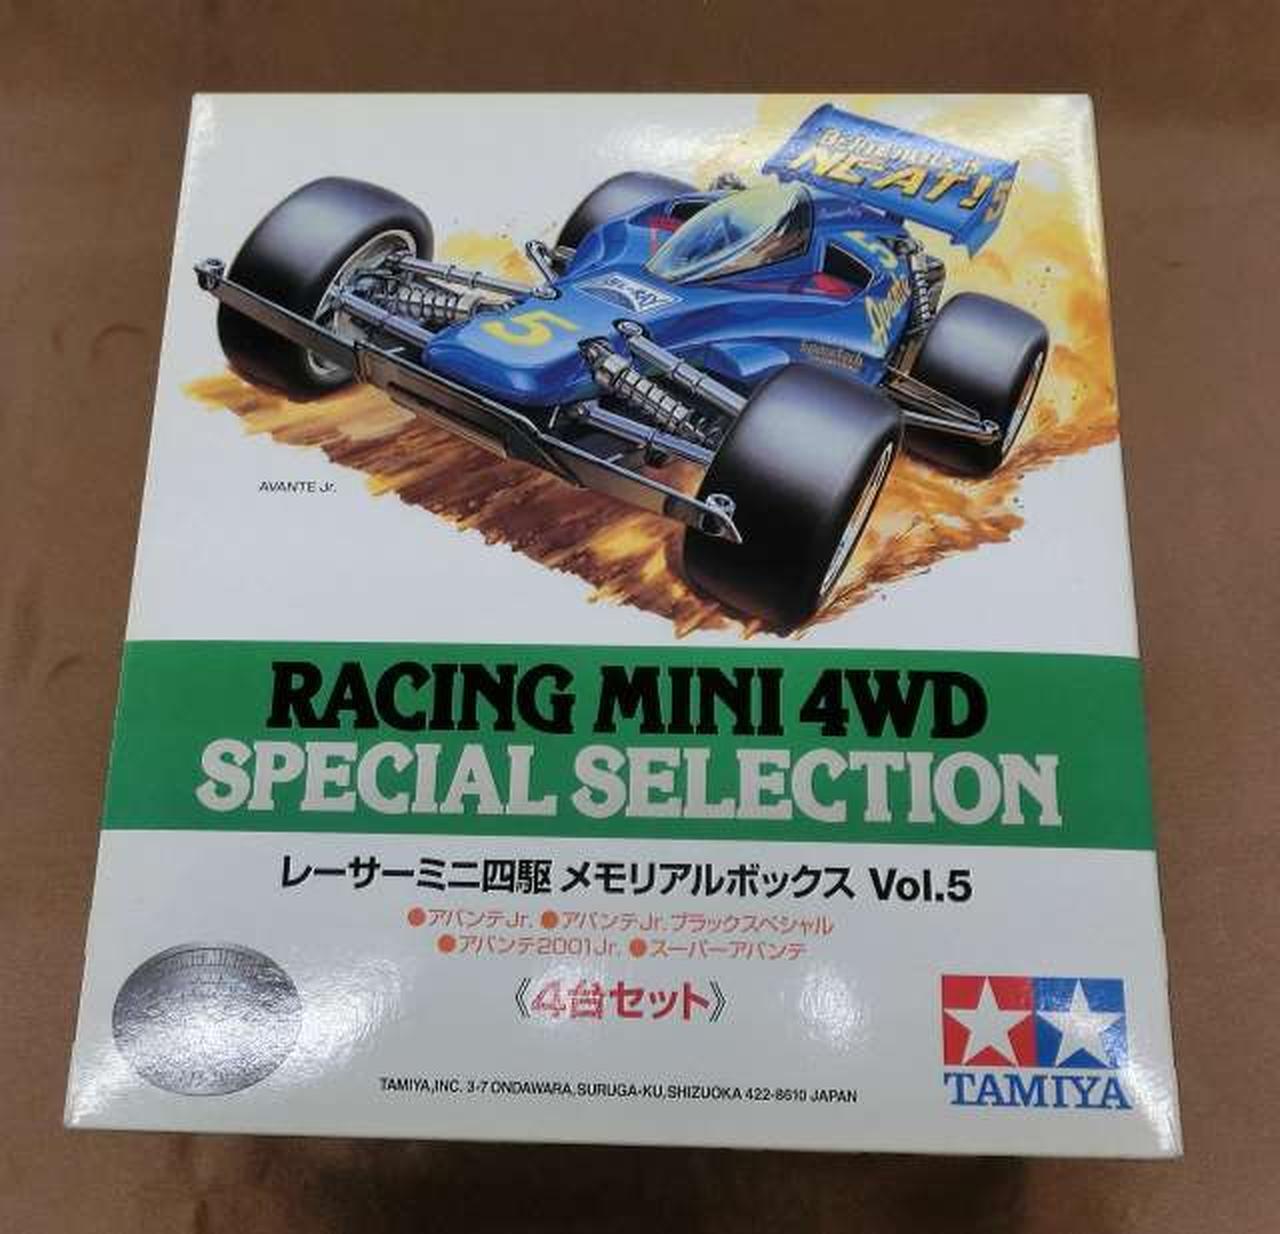 Tamiya Racer Mini 4Wd Memorial Box Vol.5